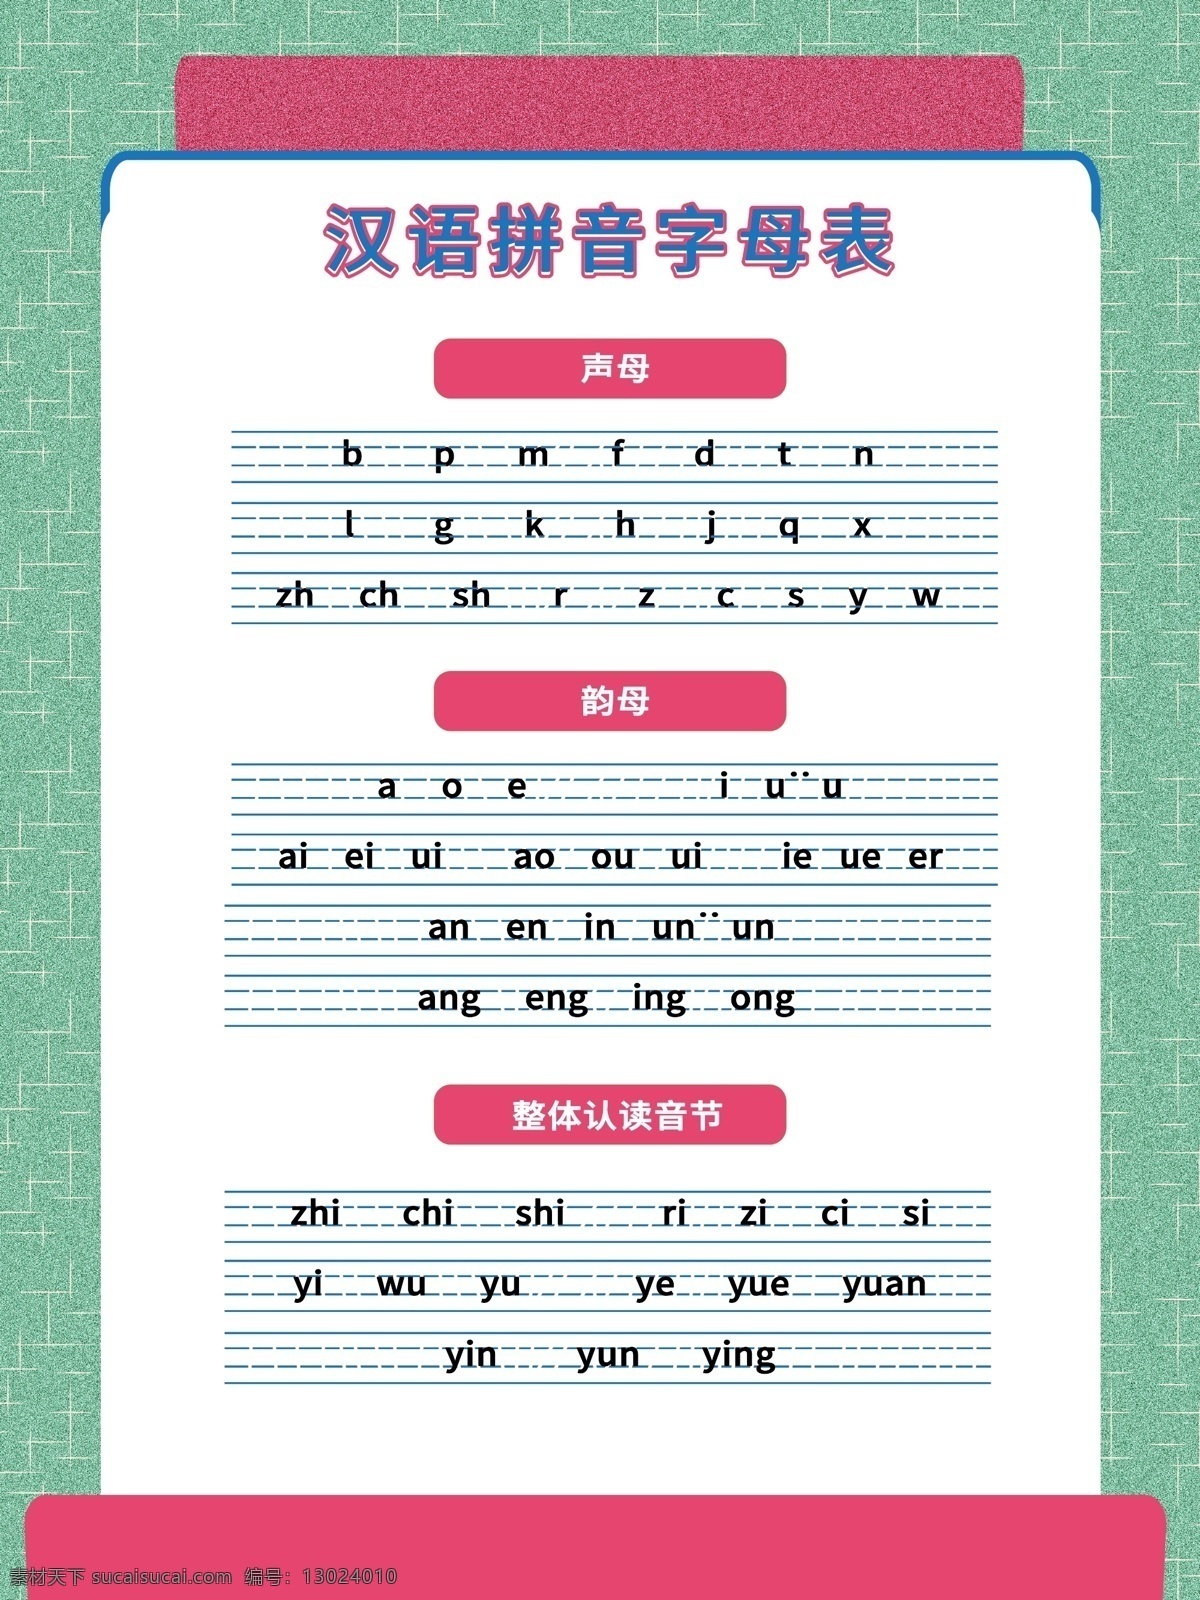 拼音字母表 汉语拼音 字母表挂画 声母表 韵母表 拼音海报